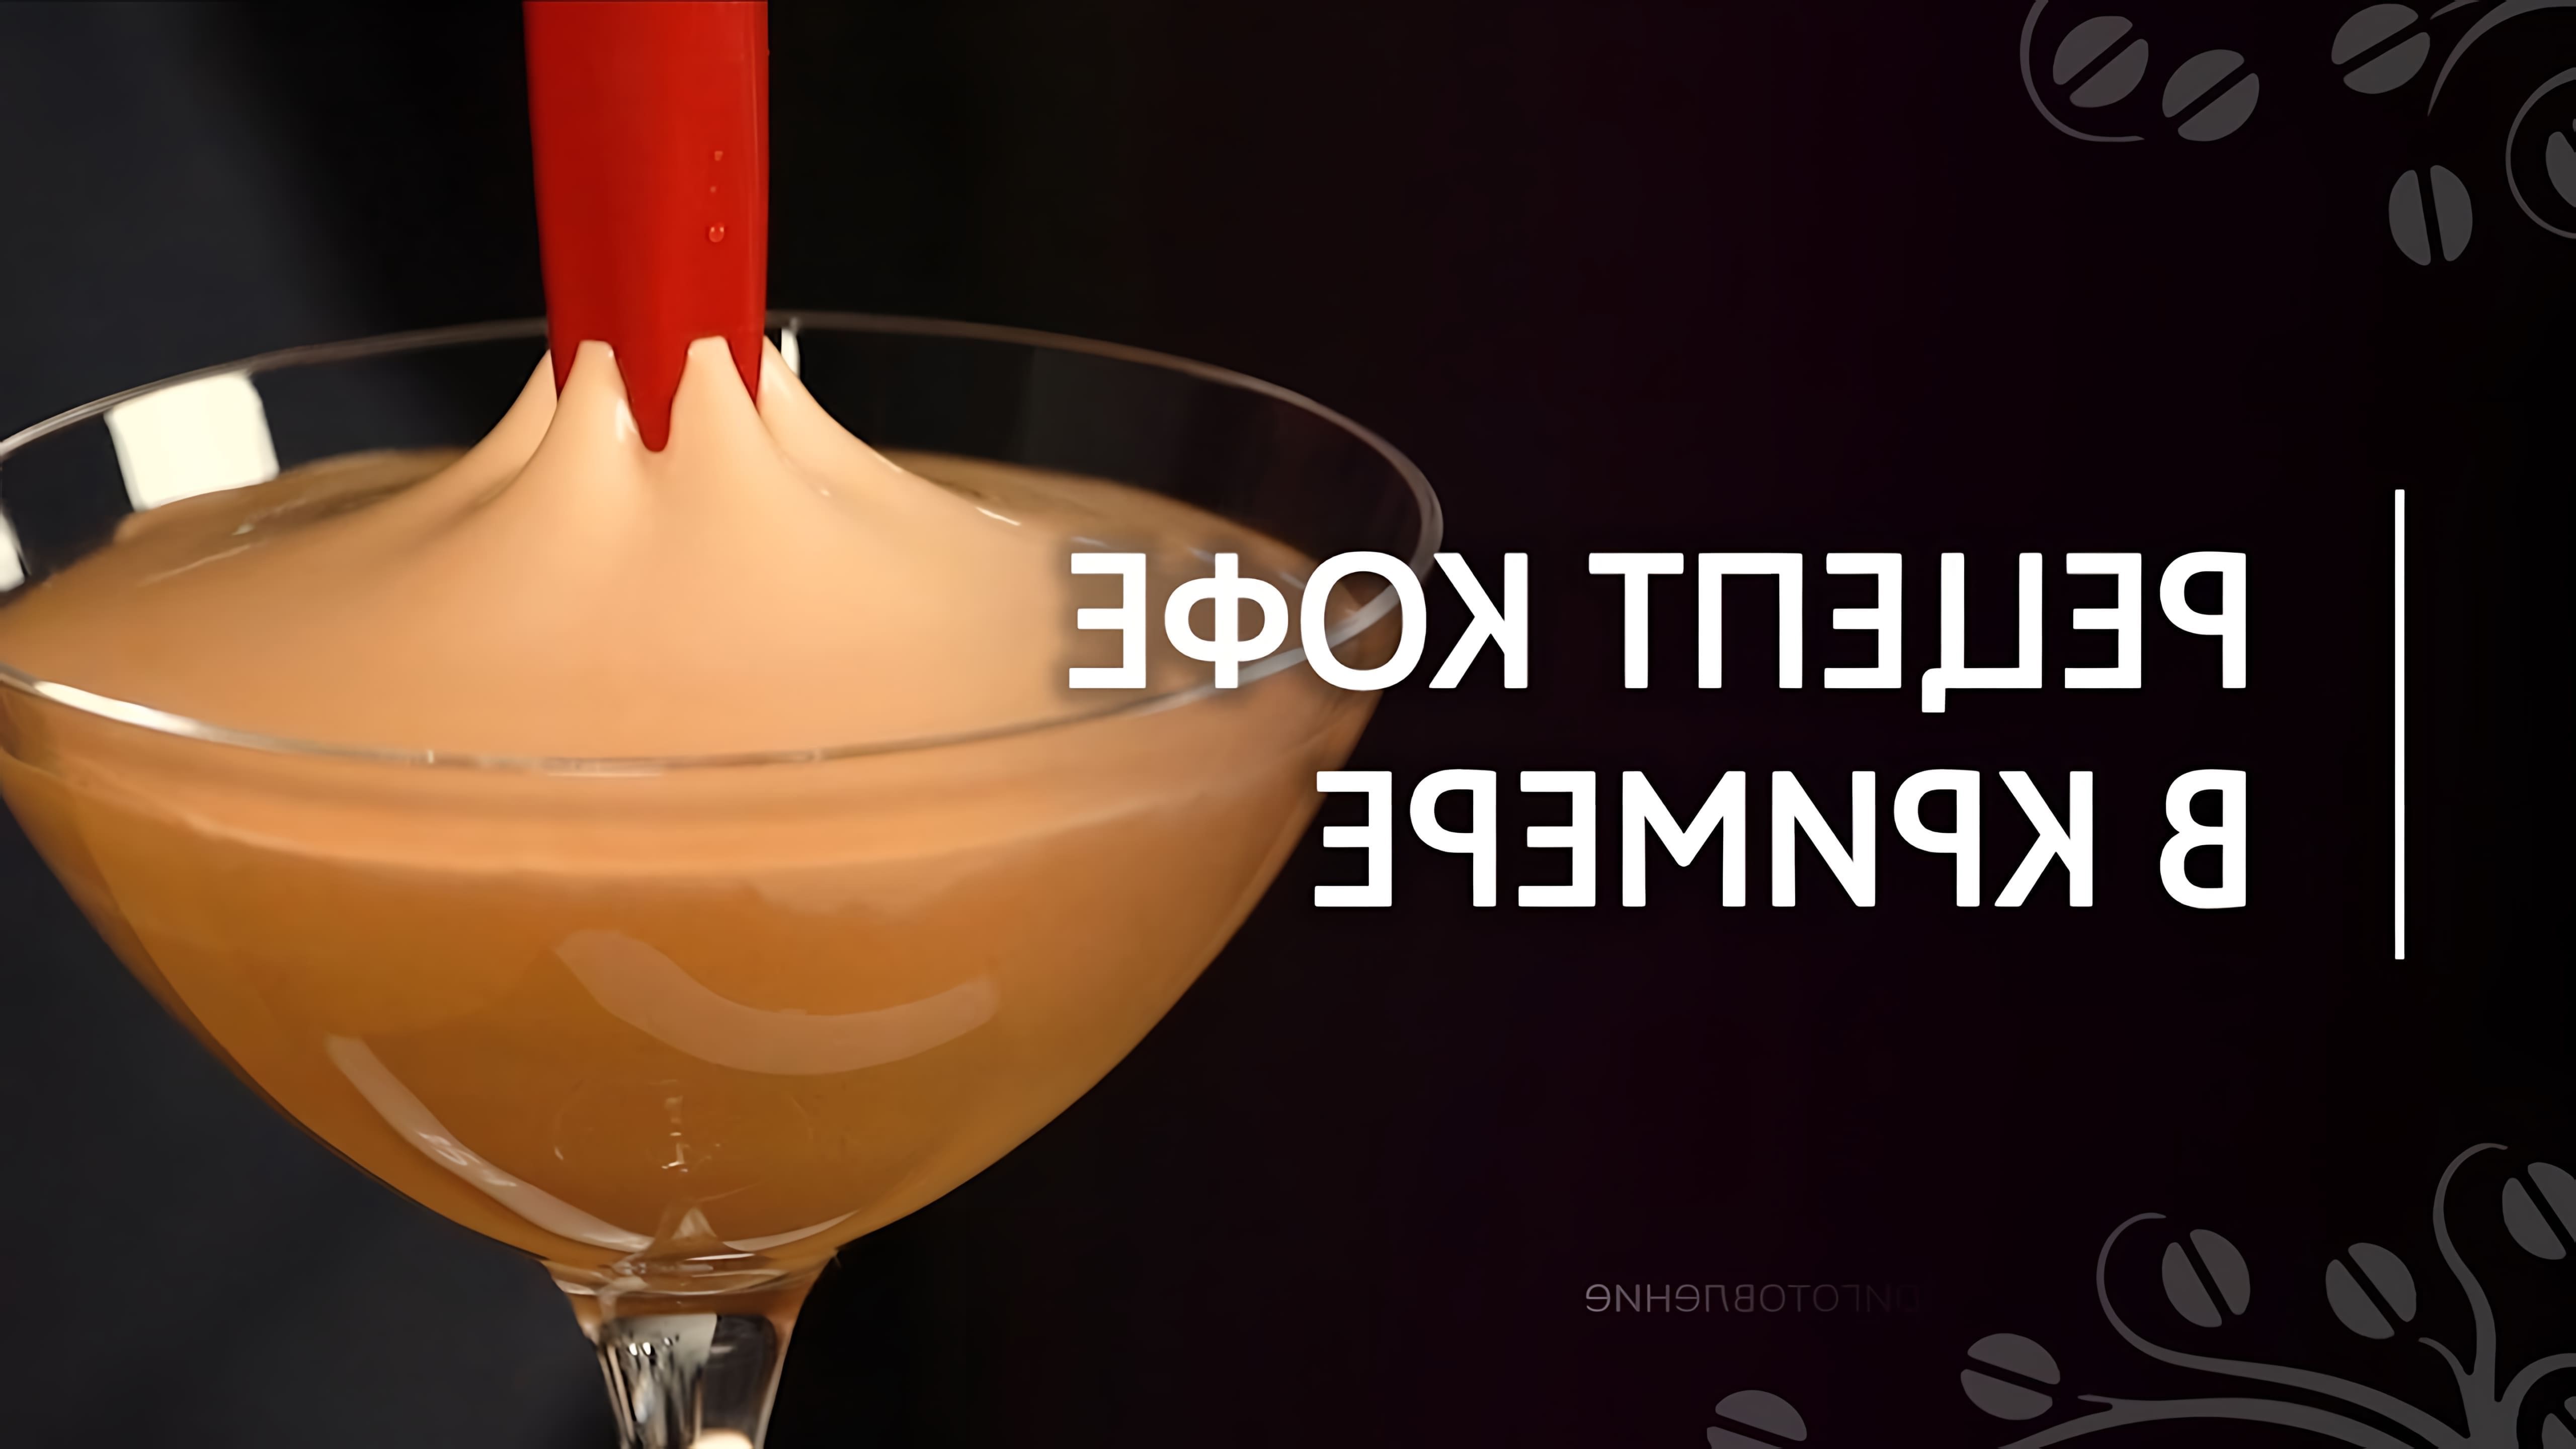 В этом видео Николай Стрельников показывает, как использовать кример для создания кофейного коктейля